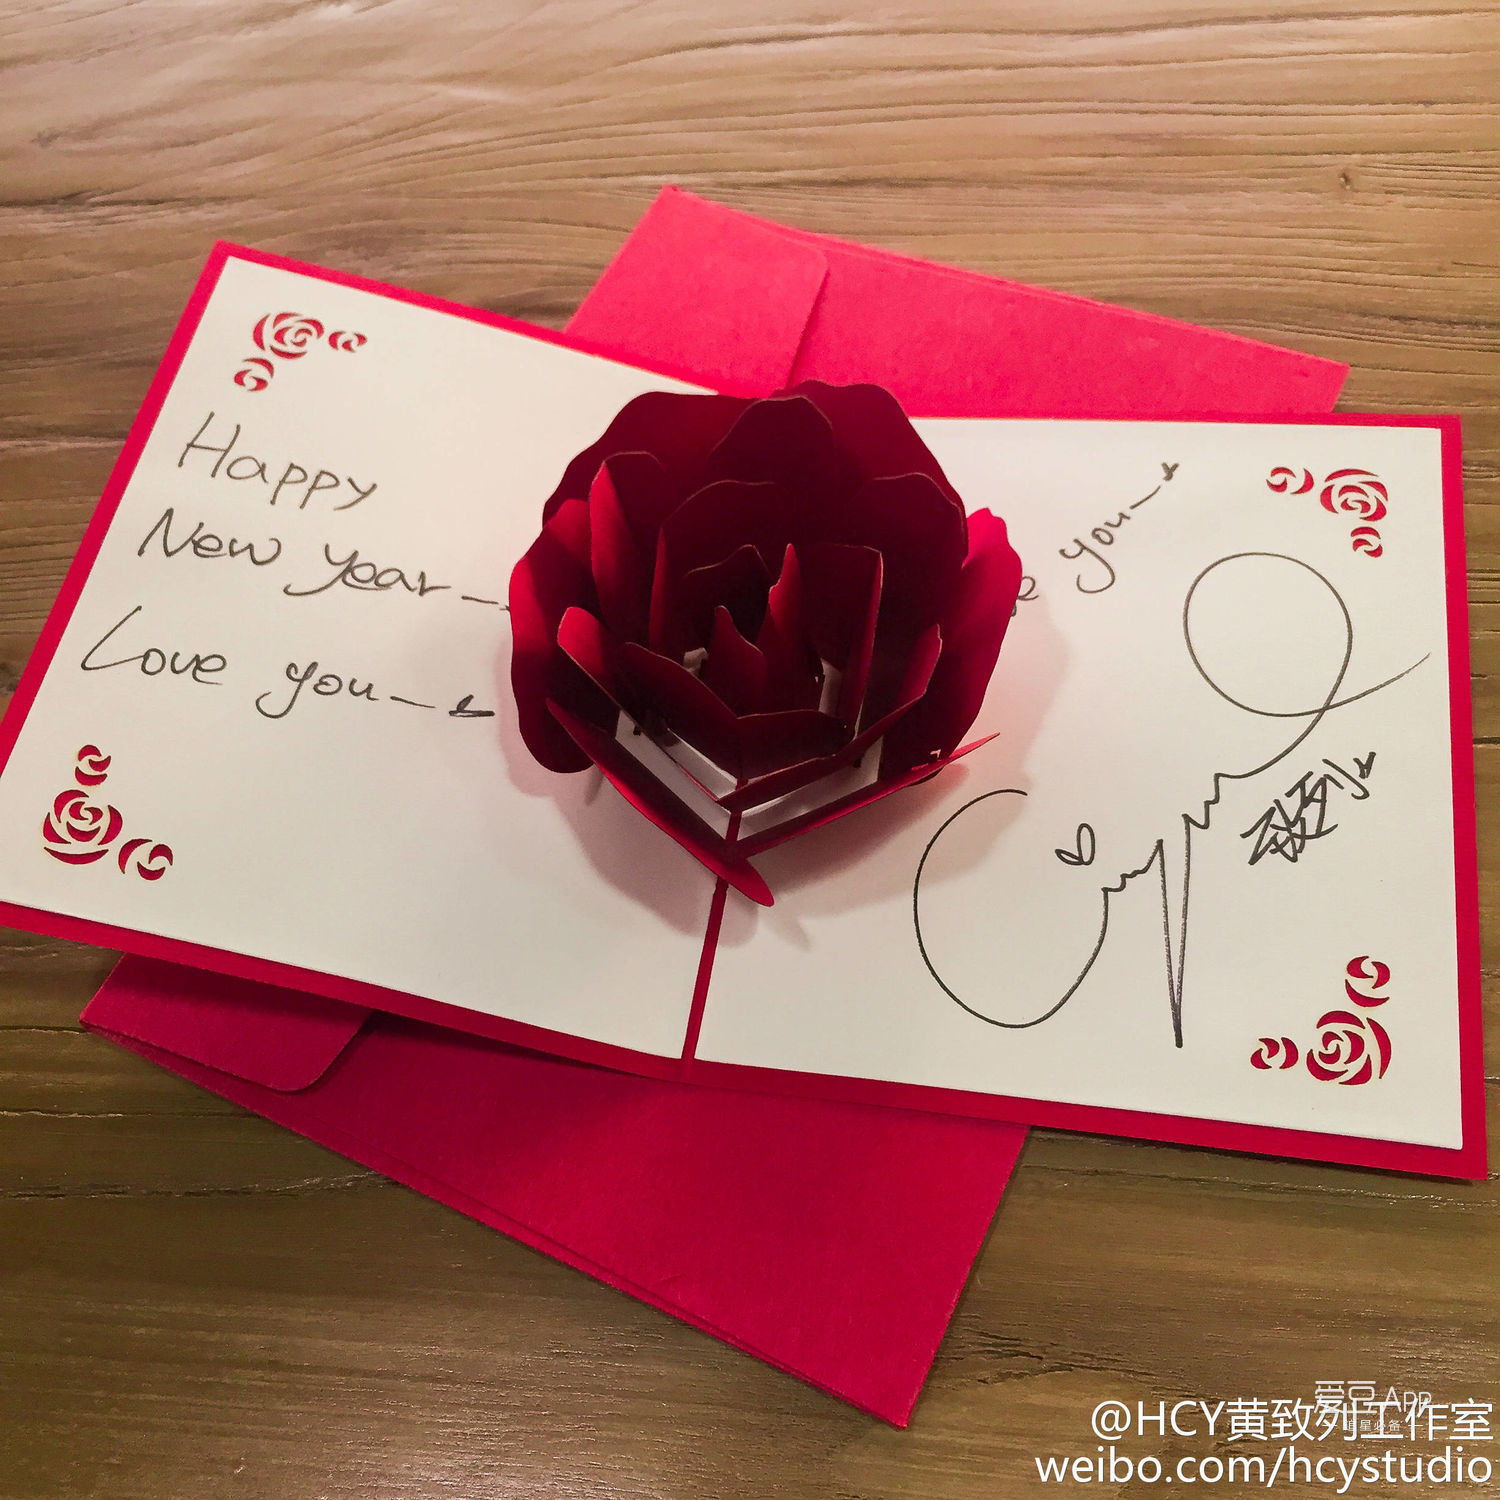 歌手大人在贺卡上写了"happynew year always love you"以及用韩文写